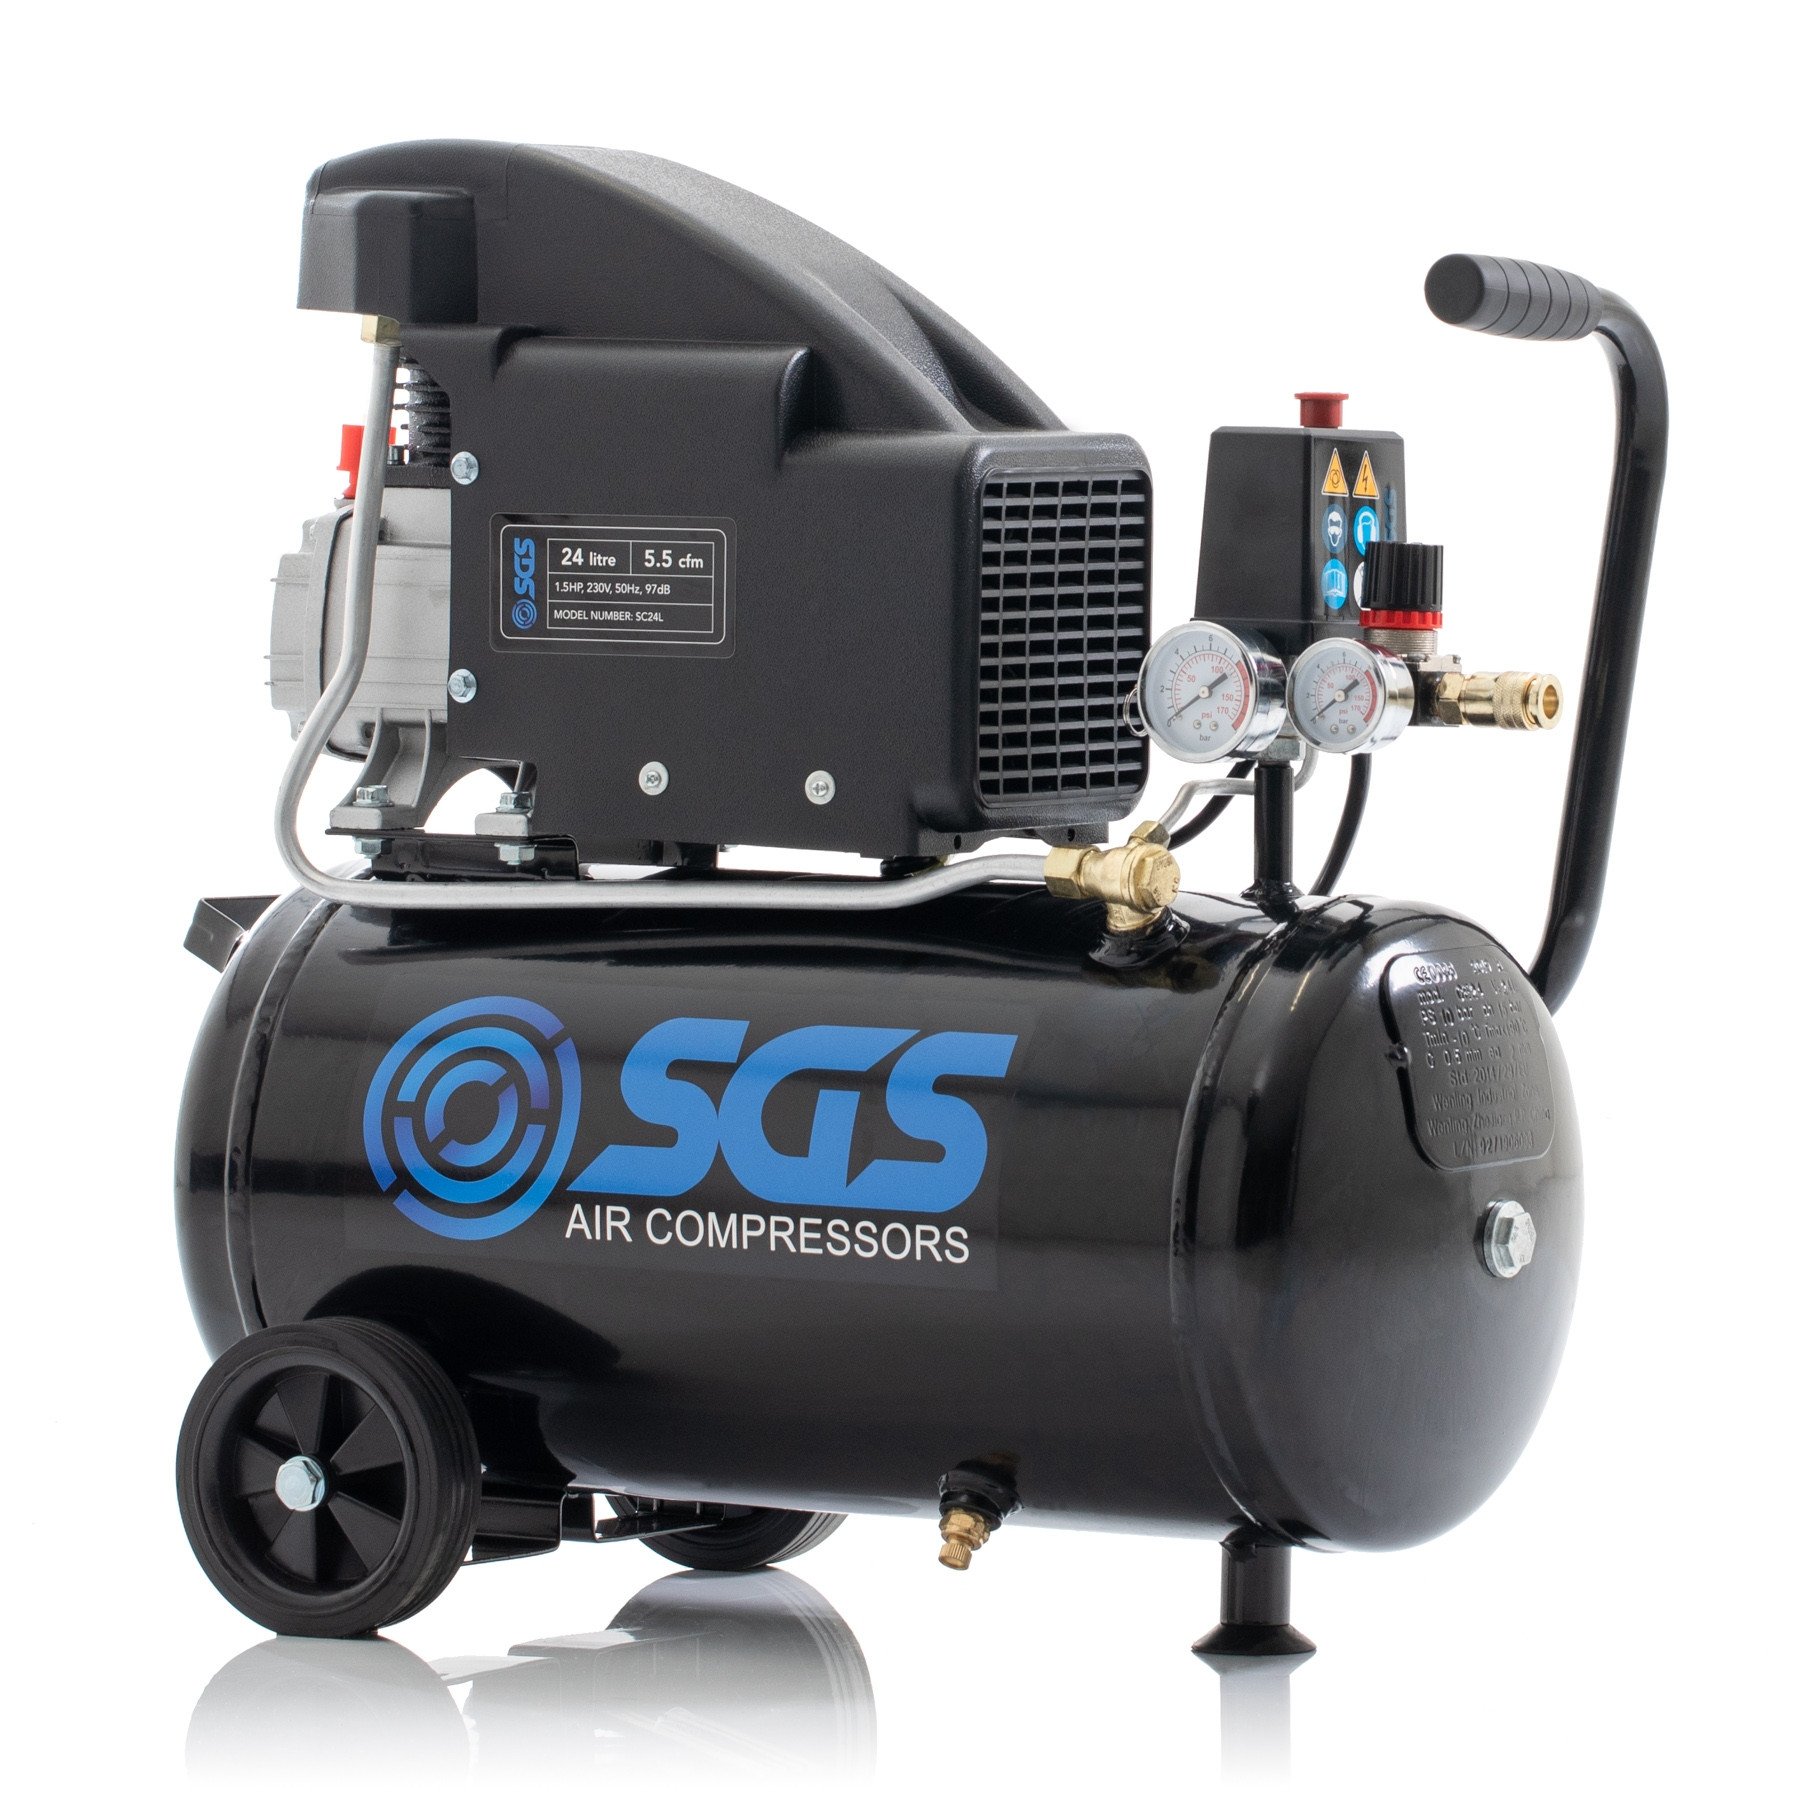 SGS 24升直驱空气压缩机- 5.5 CFM, 1.5 HP